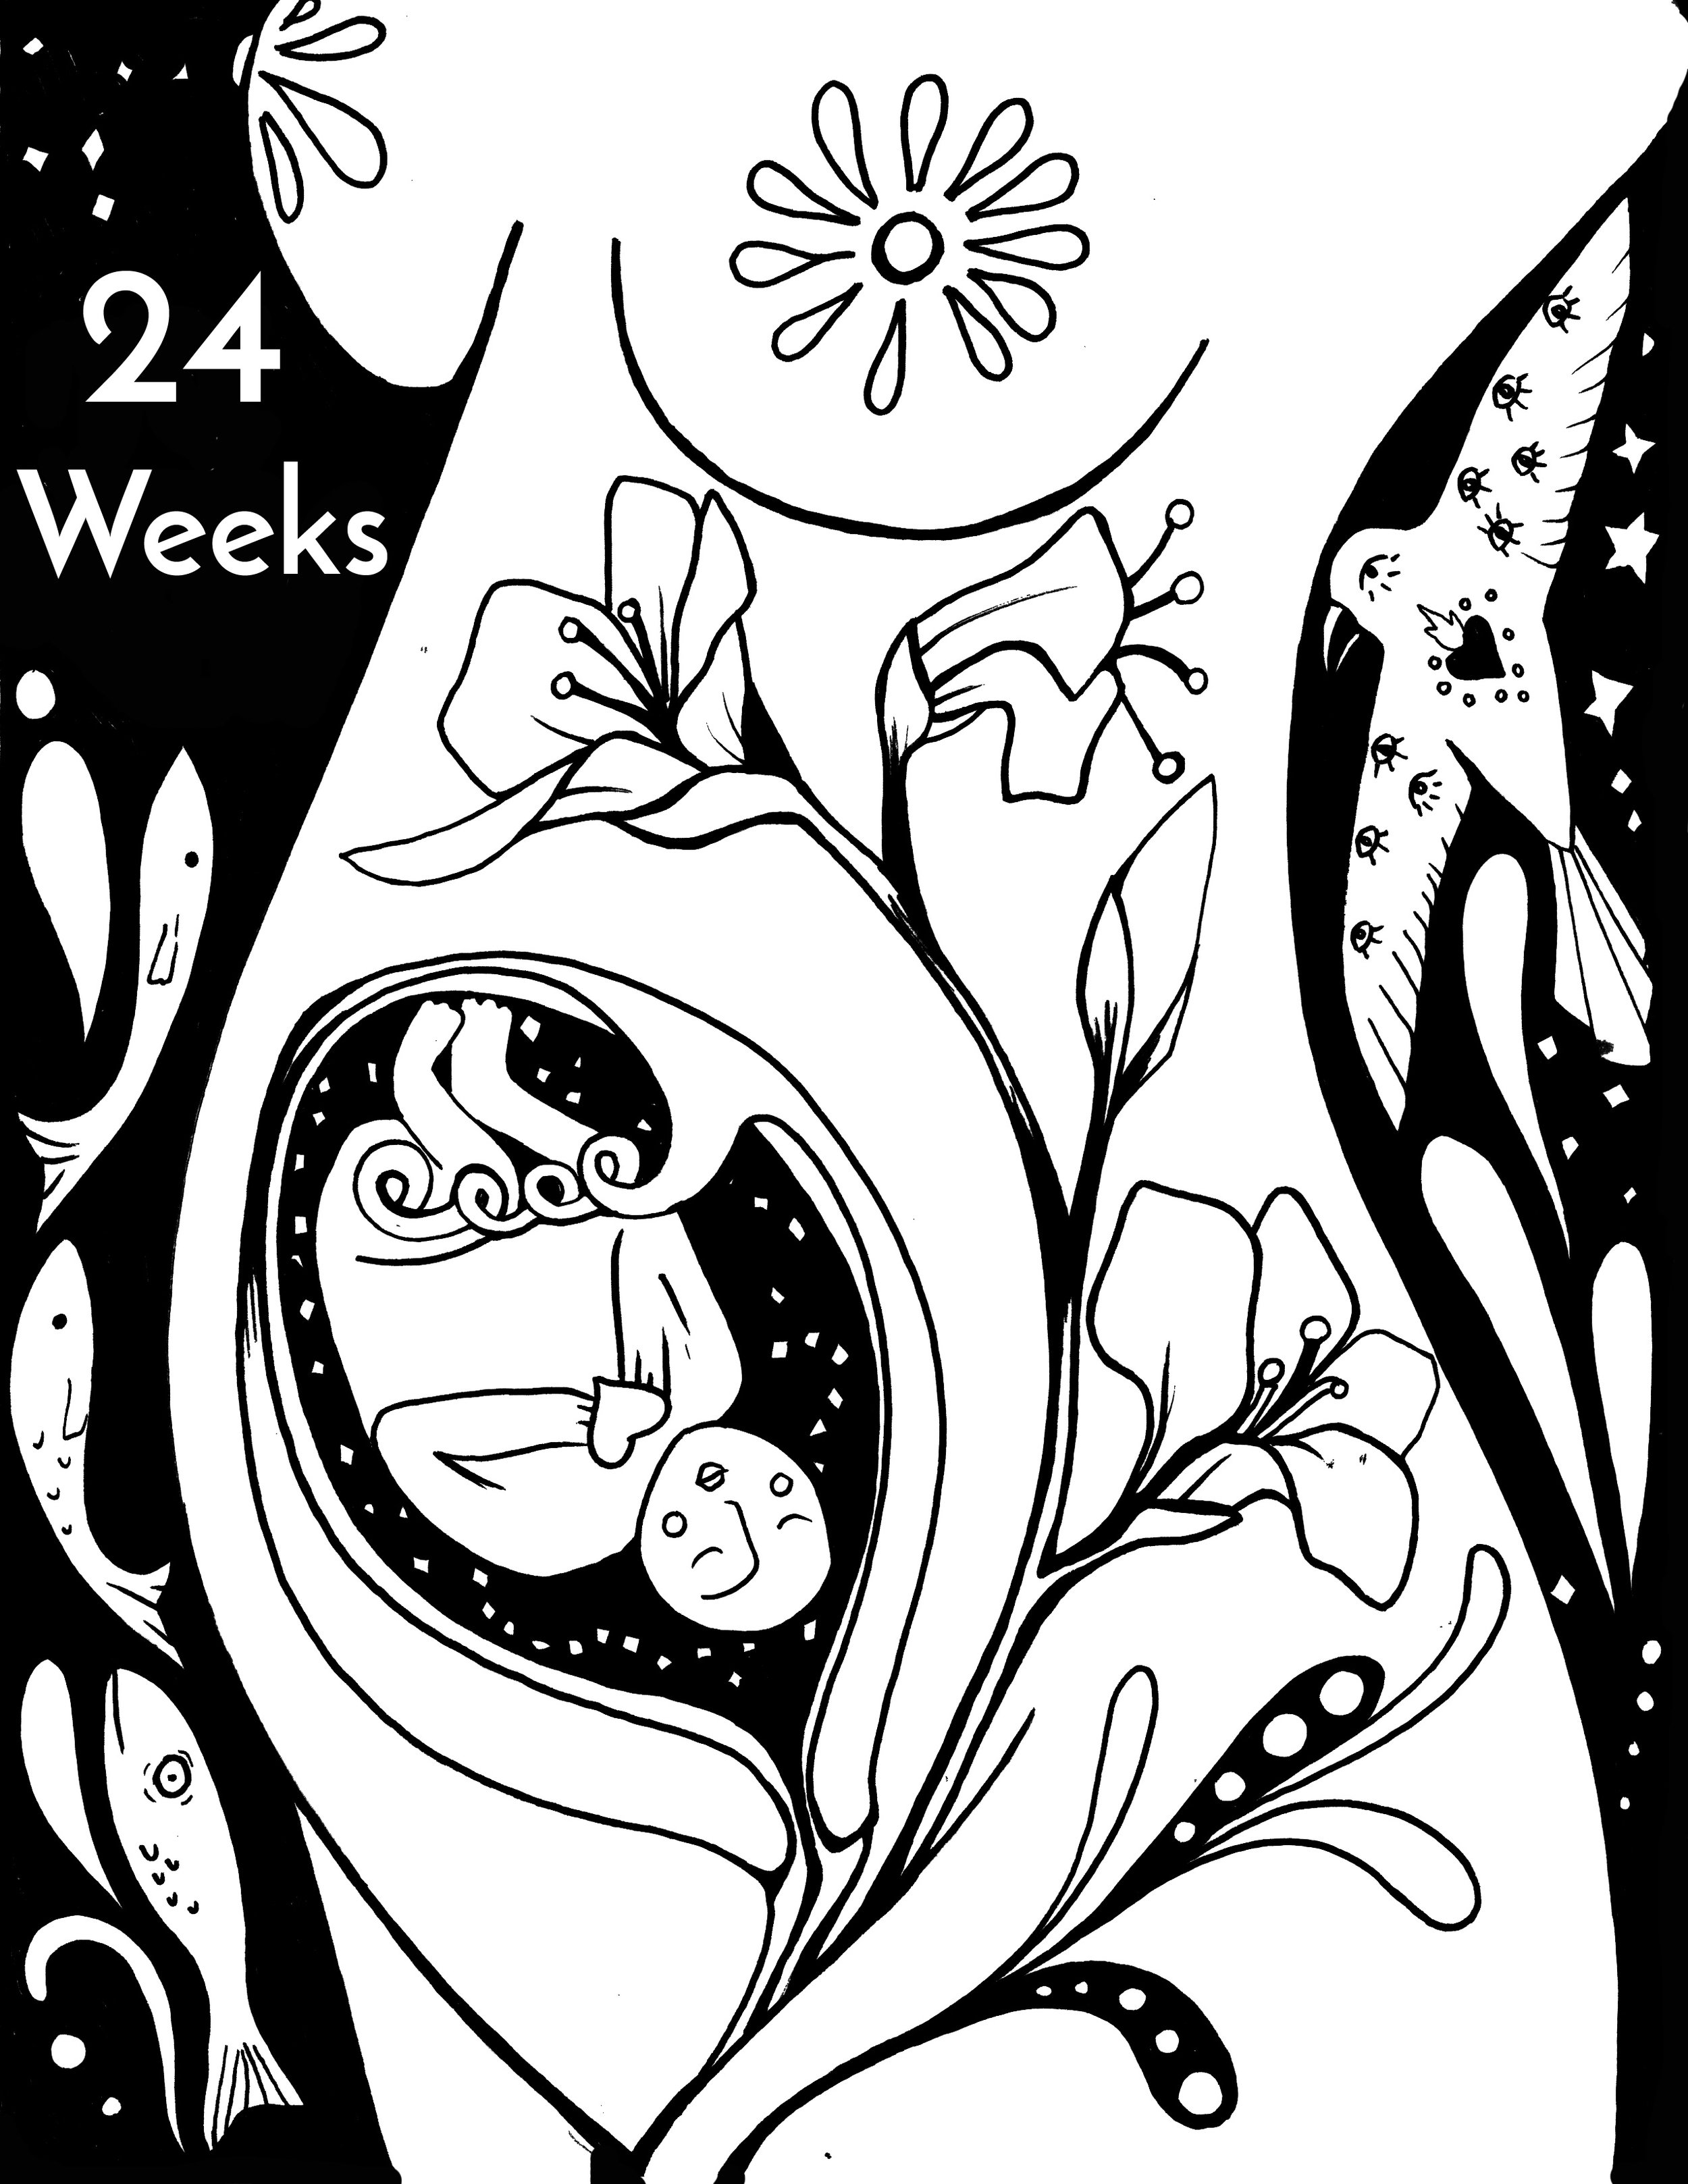 24 Weeks Baby.jpg